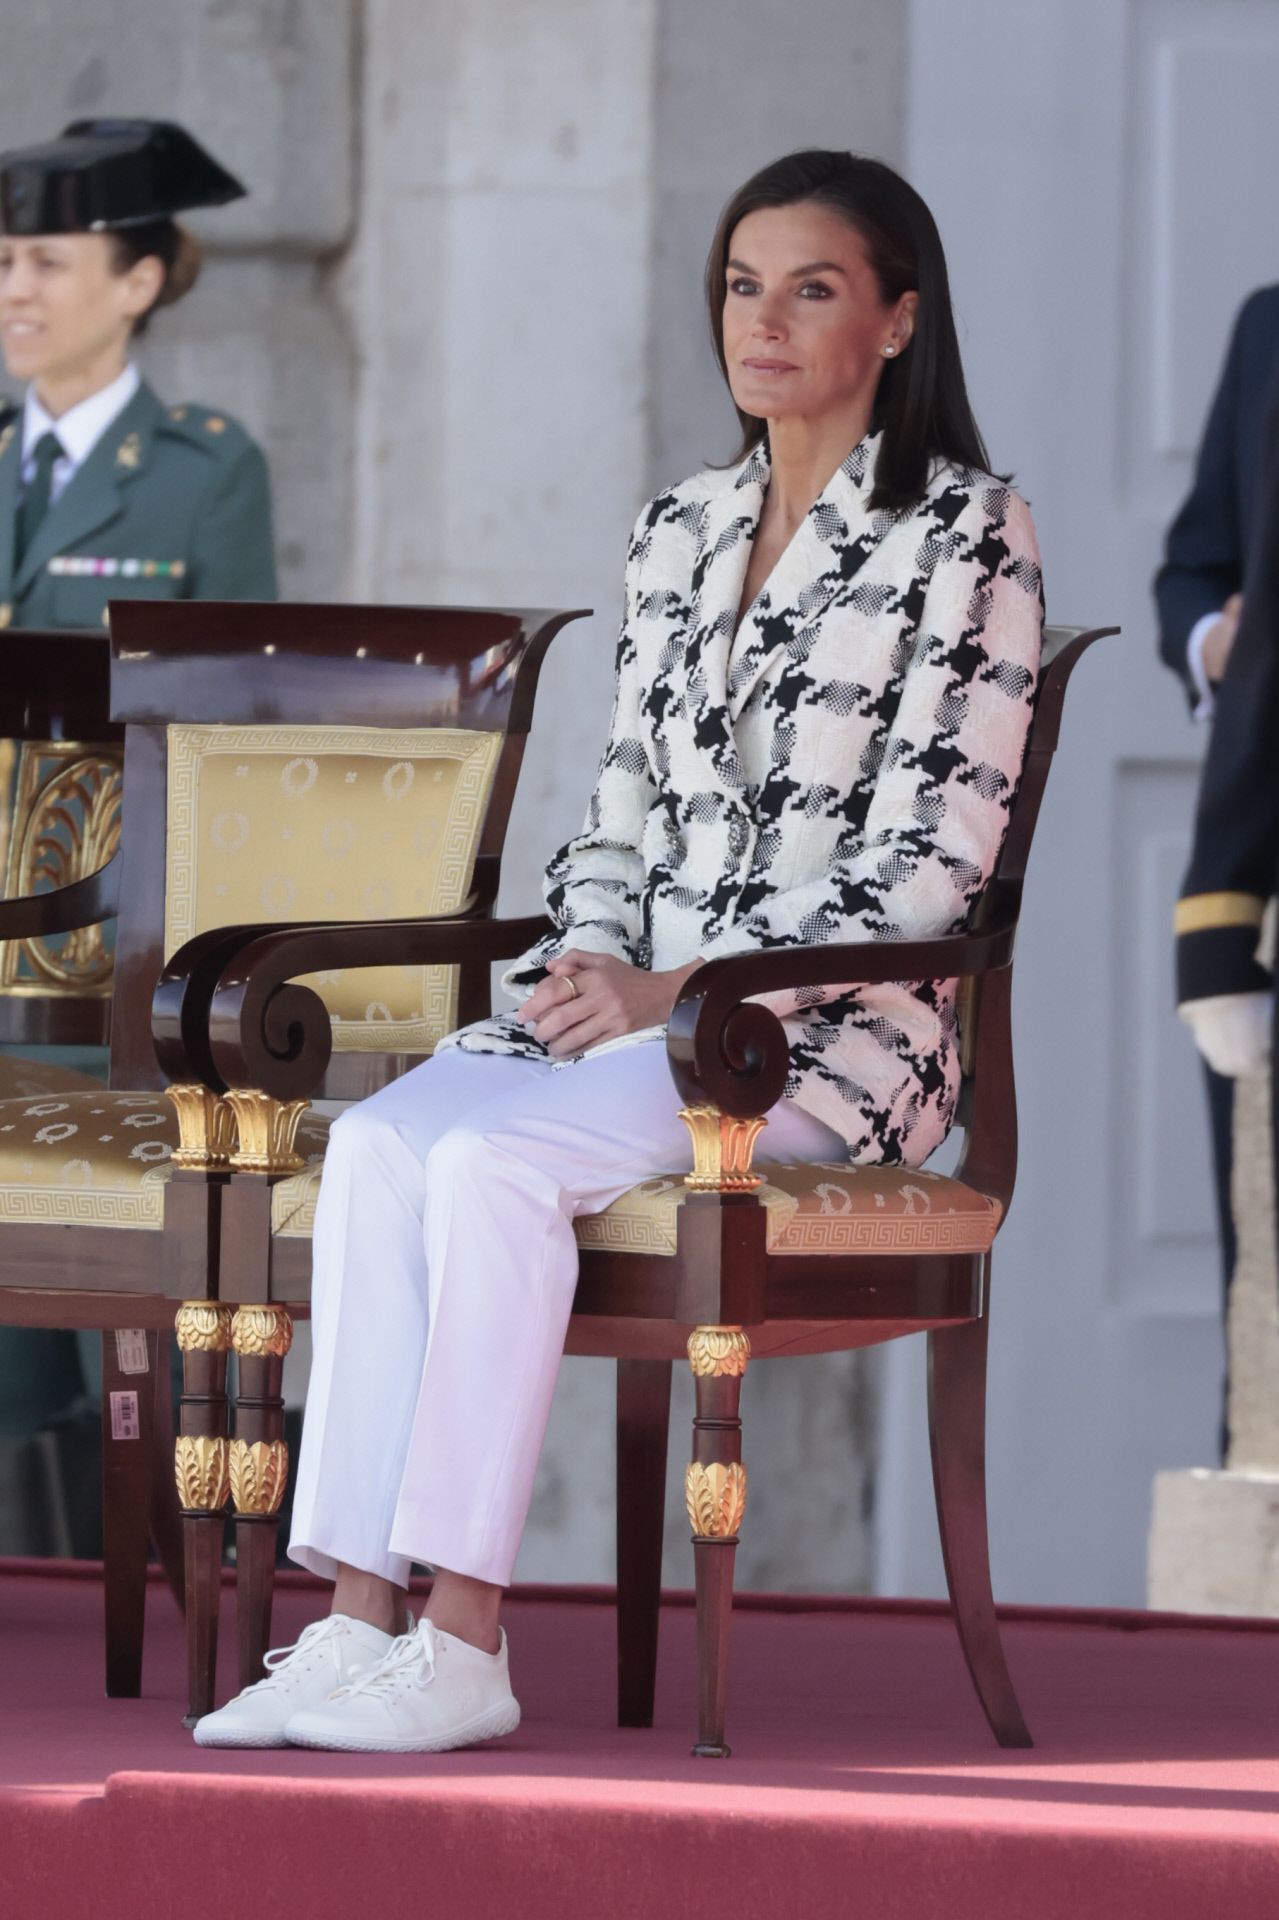 Chaqueta reciclada y zapatillas, el look de la reina Letizia para su último acto de la semana.